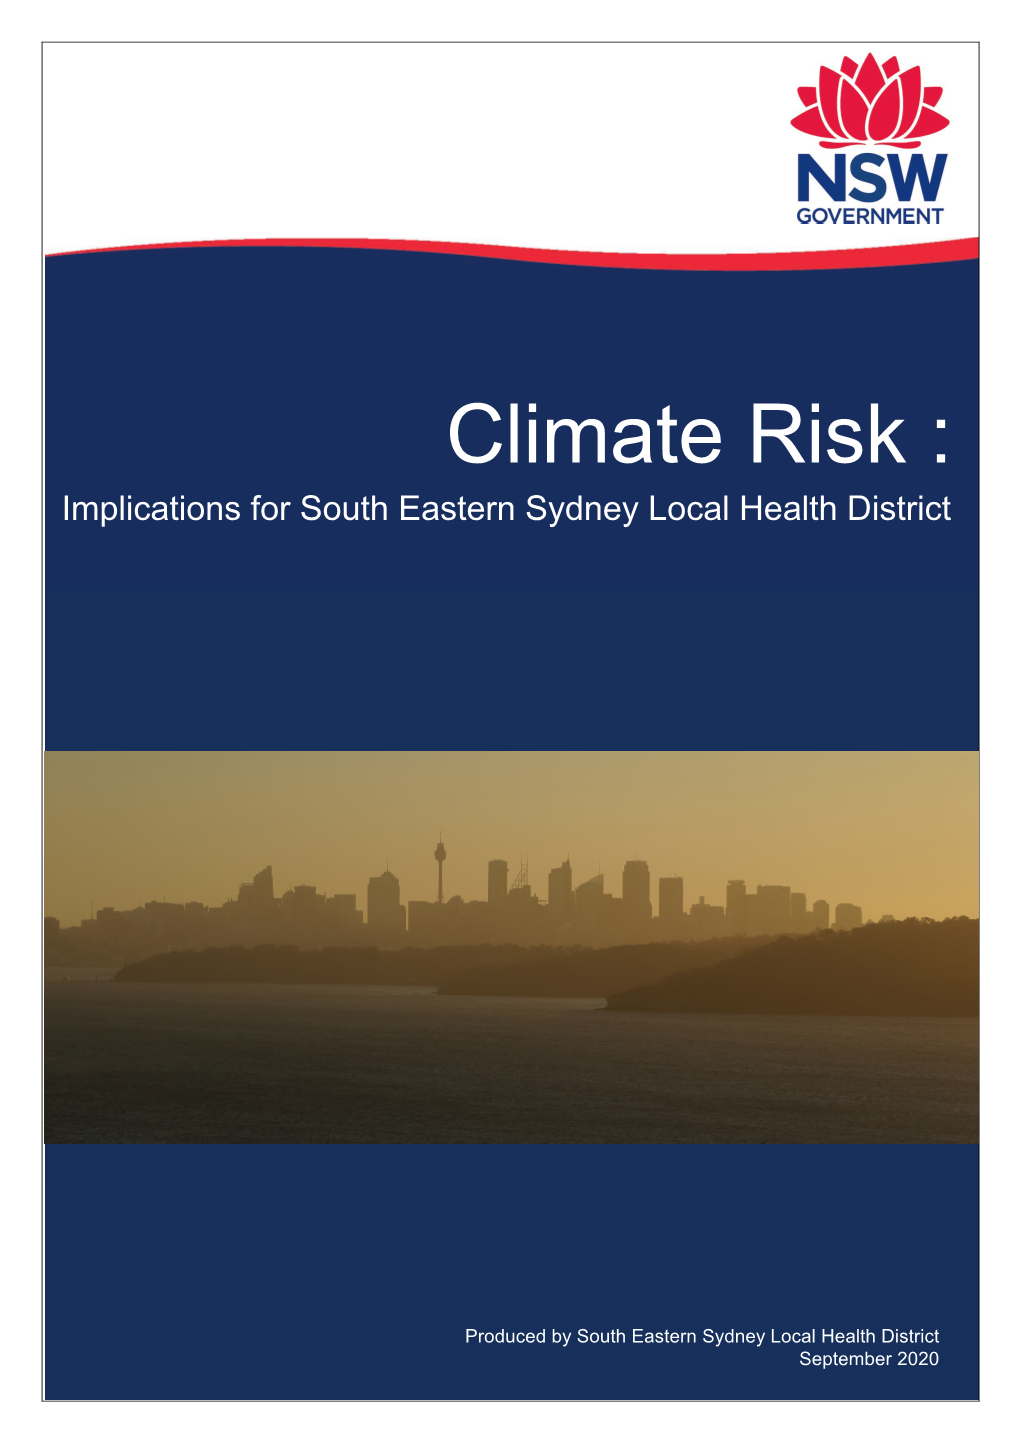 SESLHD Climate Risk Report September 2020